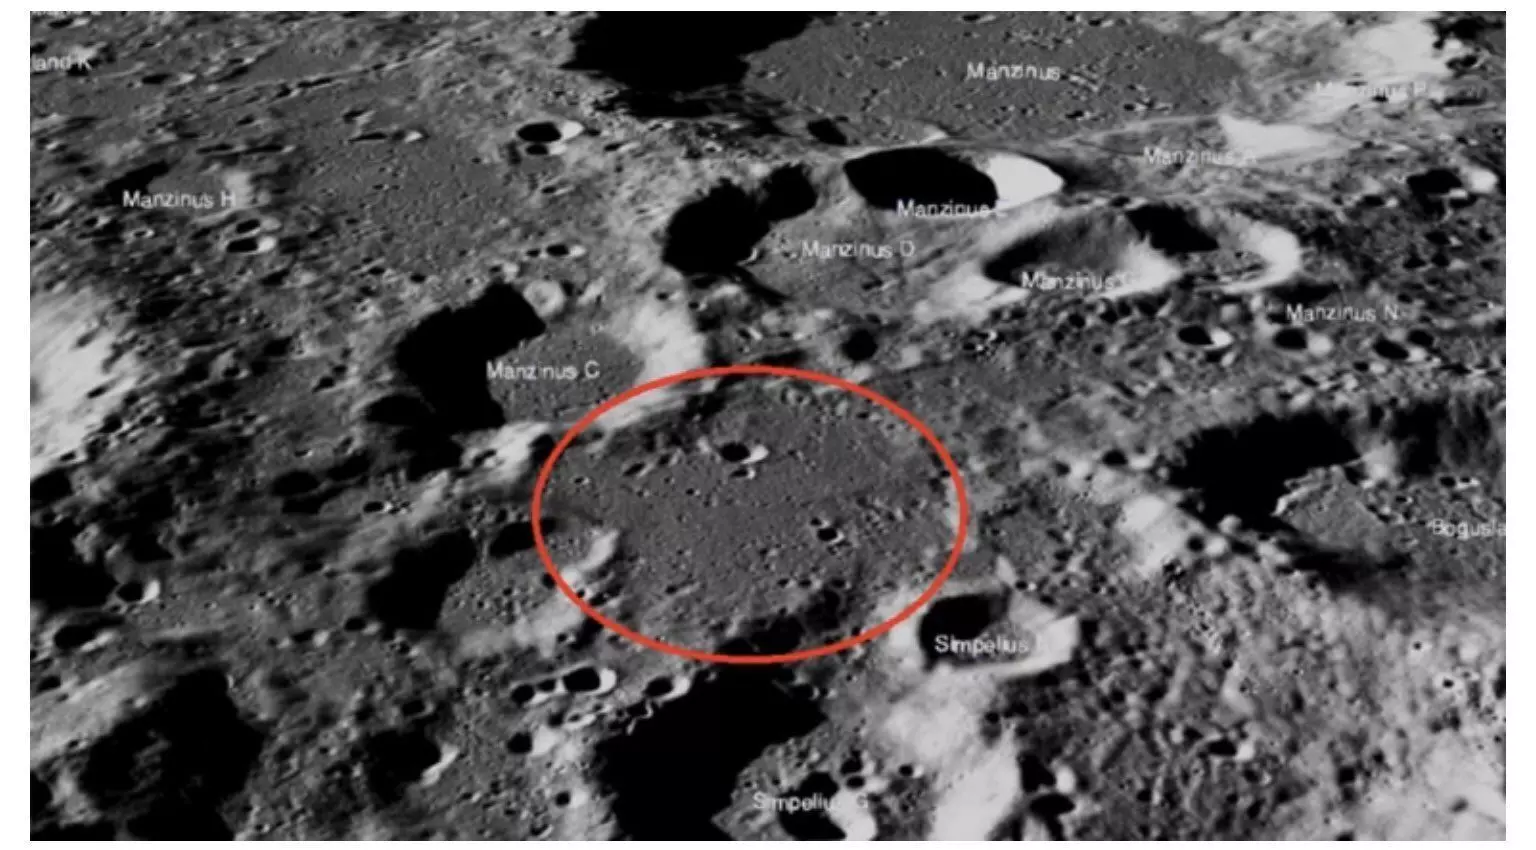 नासा ने खोज निकाला चंद्रयान-2 का विक्रम लैंडर, क्रैश साइट से 750 मीटर दूर तलाशे 3 टुकड़े, फोटो जारी